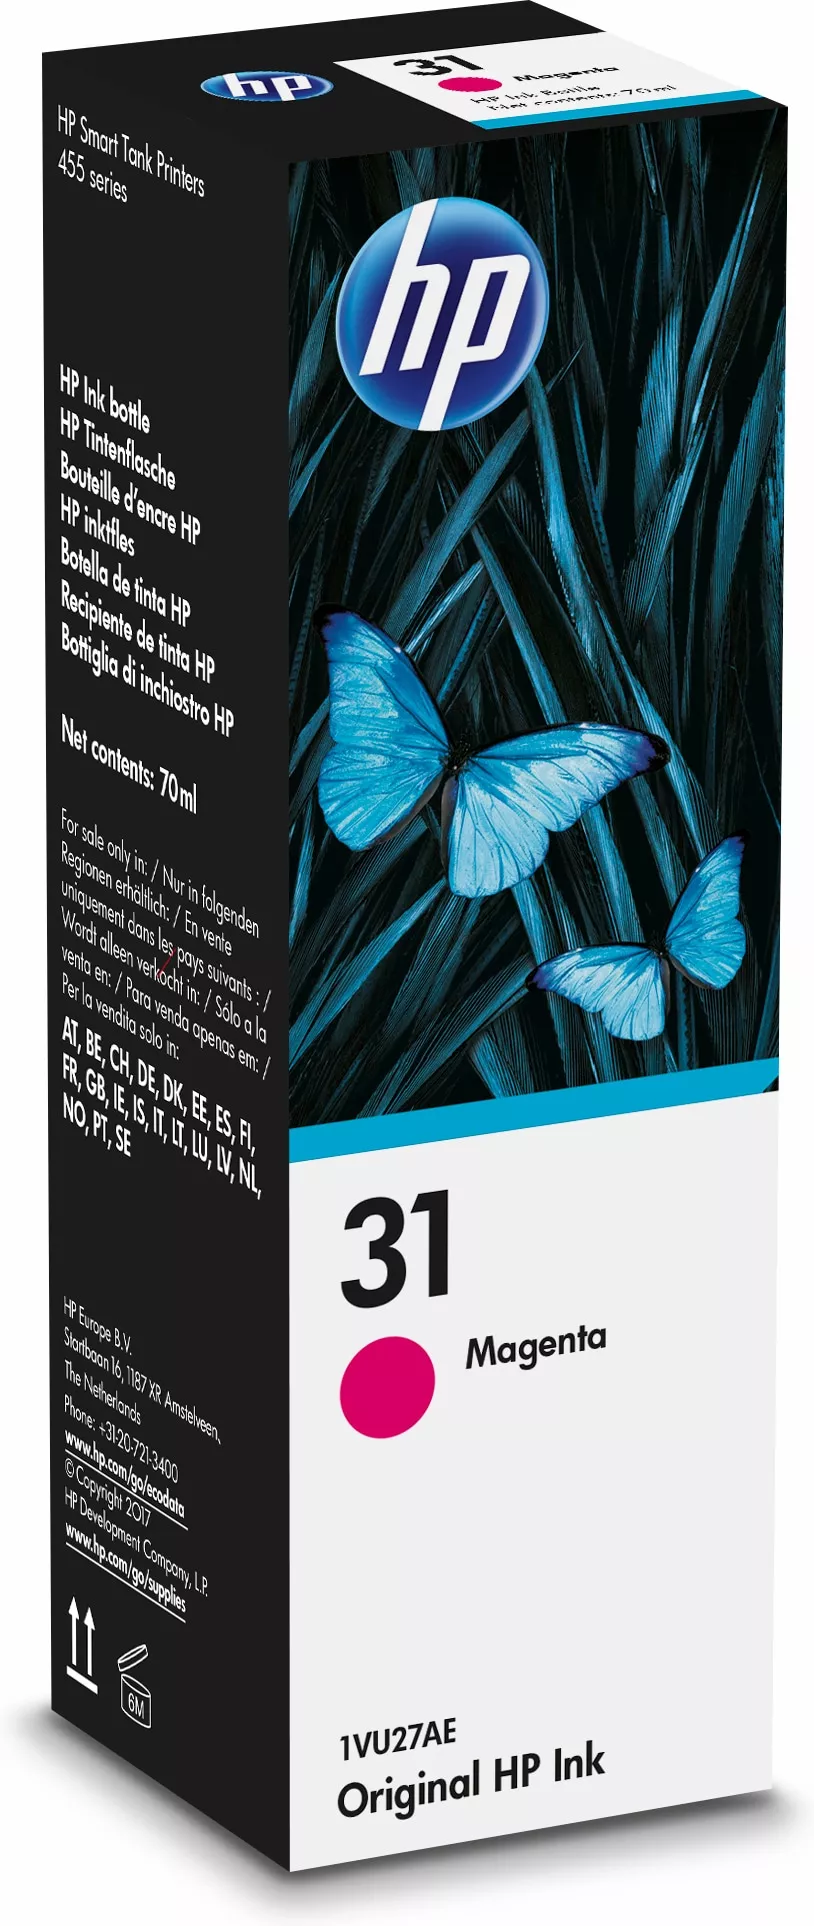 Achat HP 31 Magenta Original Ink Bottle au meilleur prix